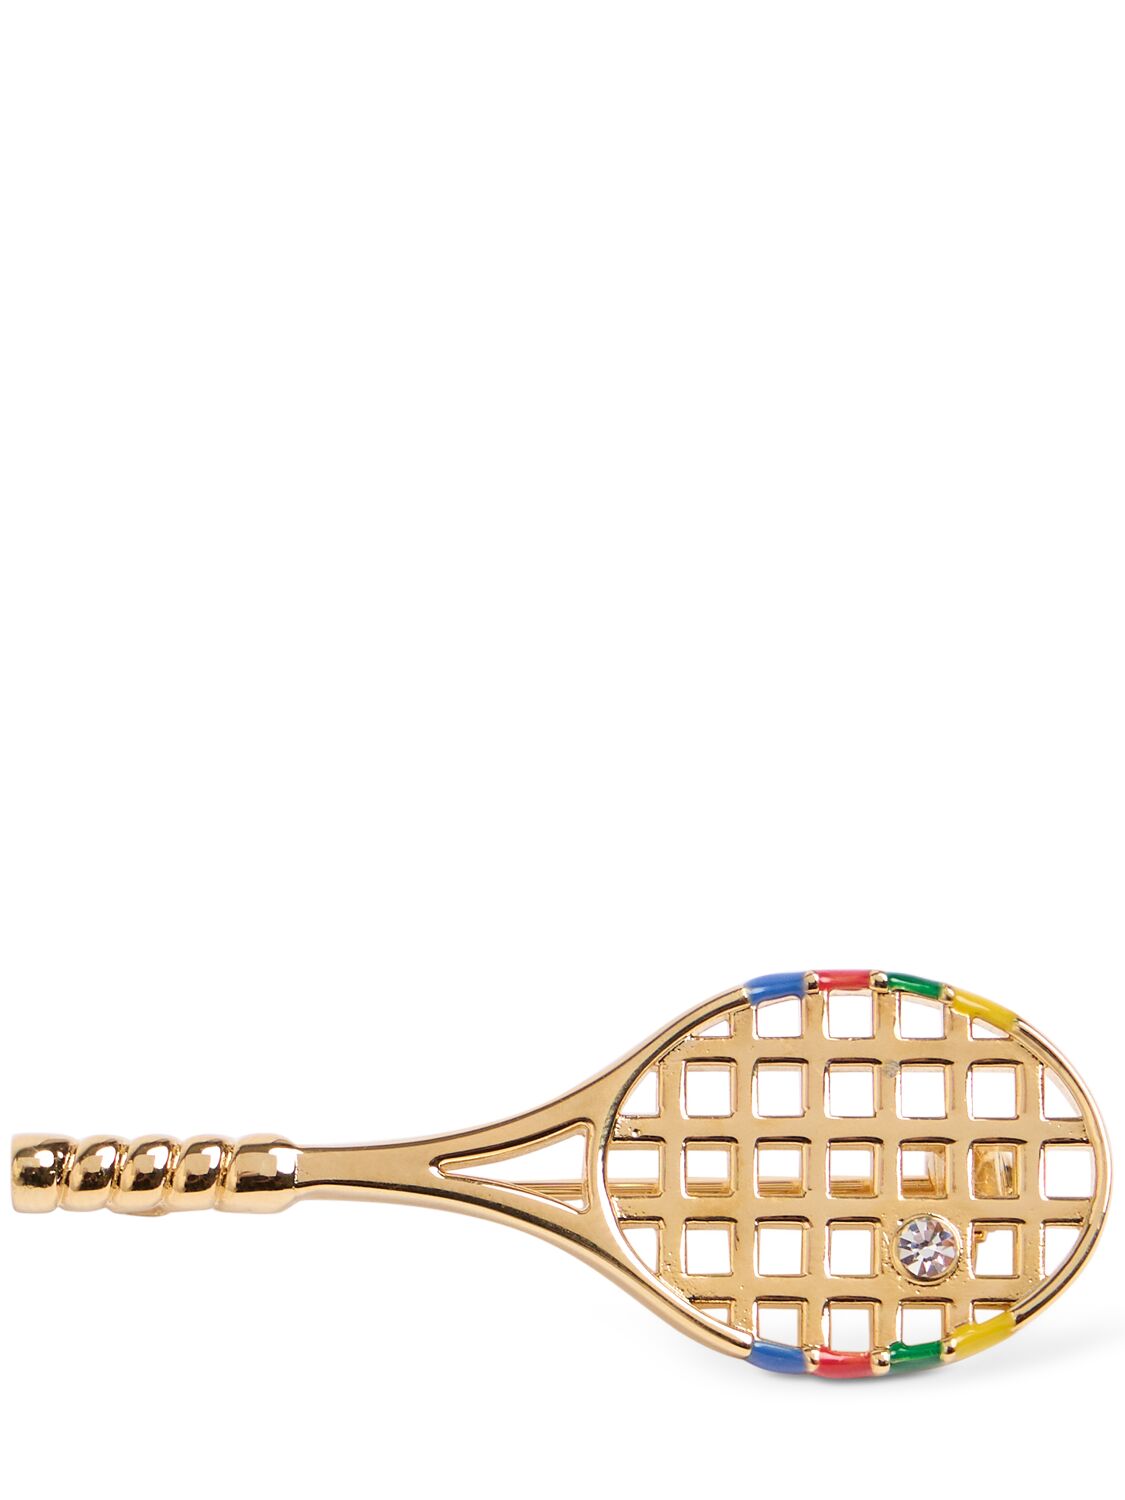 Image of Tennis Racket Brooch